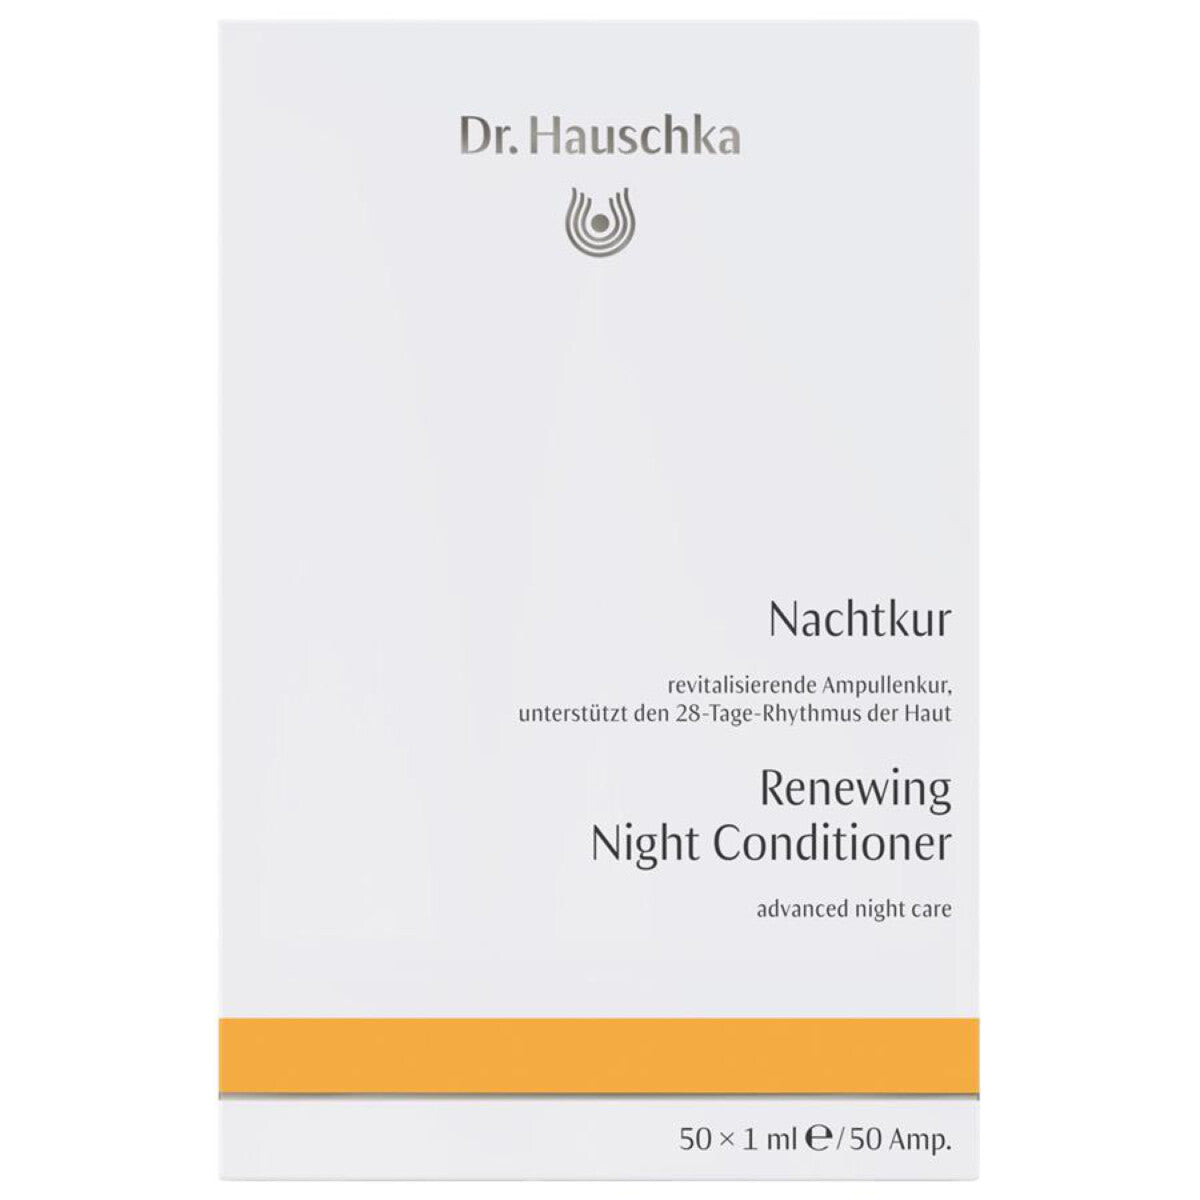 DR. HAUSCHKA Nachtkur 50x1ml - 50 ml